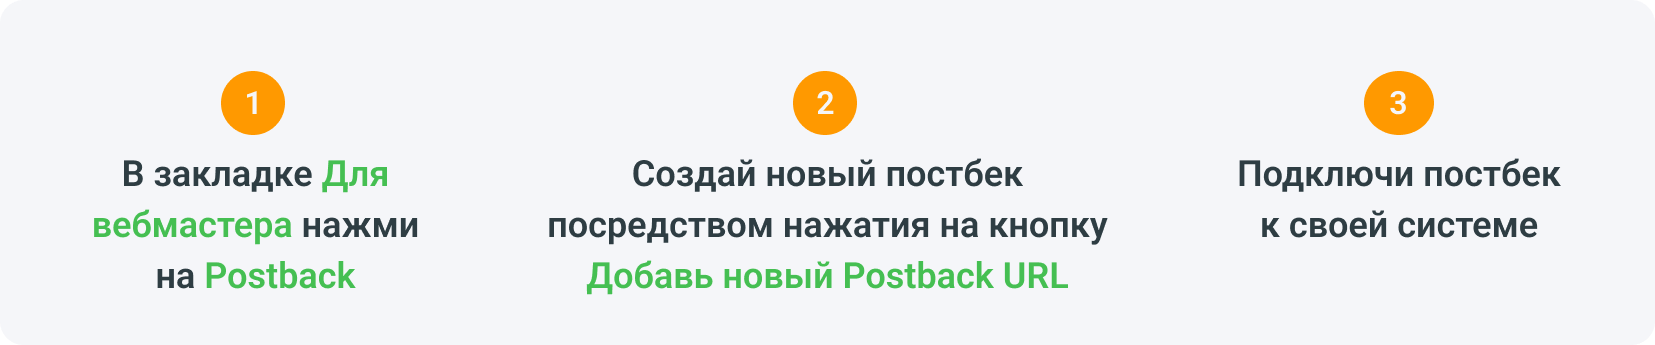 Подсеть может подключиться к партнерской сети через интеграцию Postback.